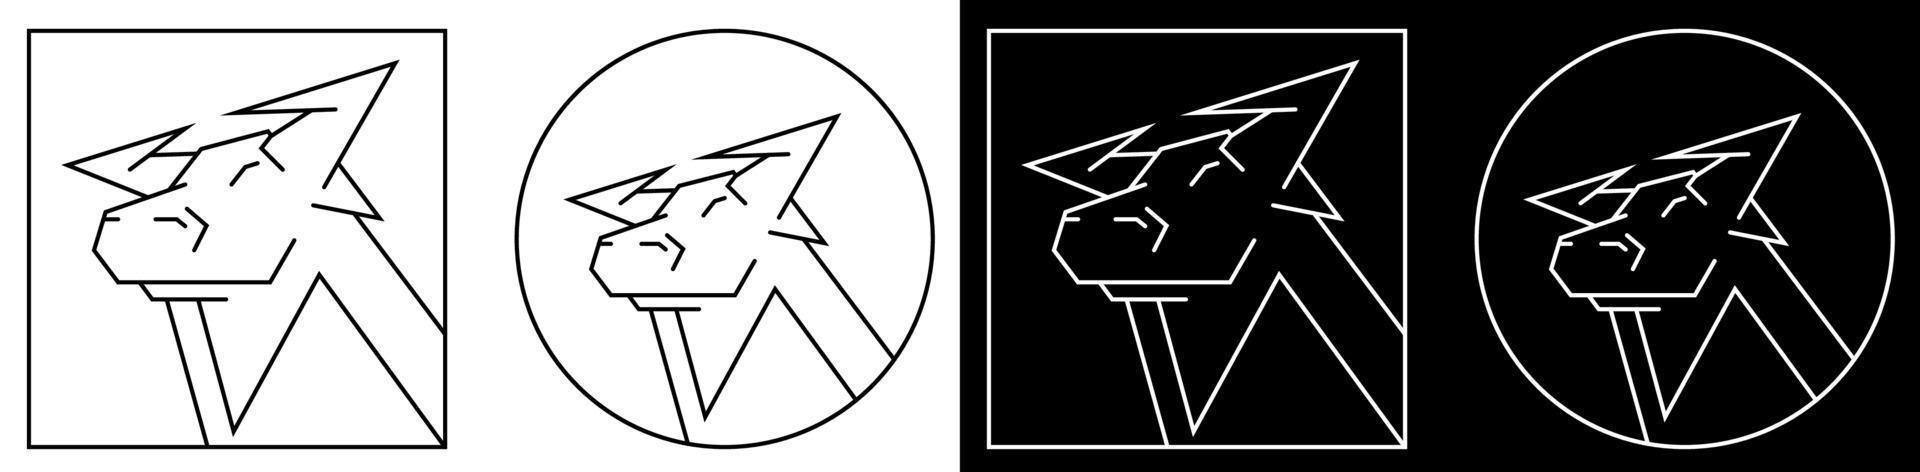 2021 toro, buey el símbolo del año nuevo del calendario chino. imagen estilizada en líneas geométricas regulares. icono, logotipo en estilo blanco y negro vector